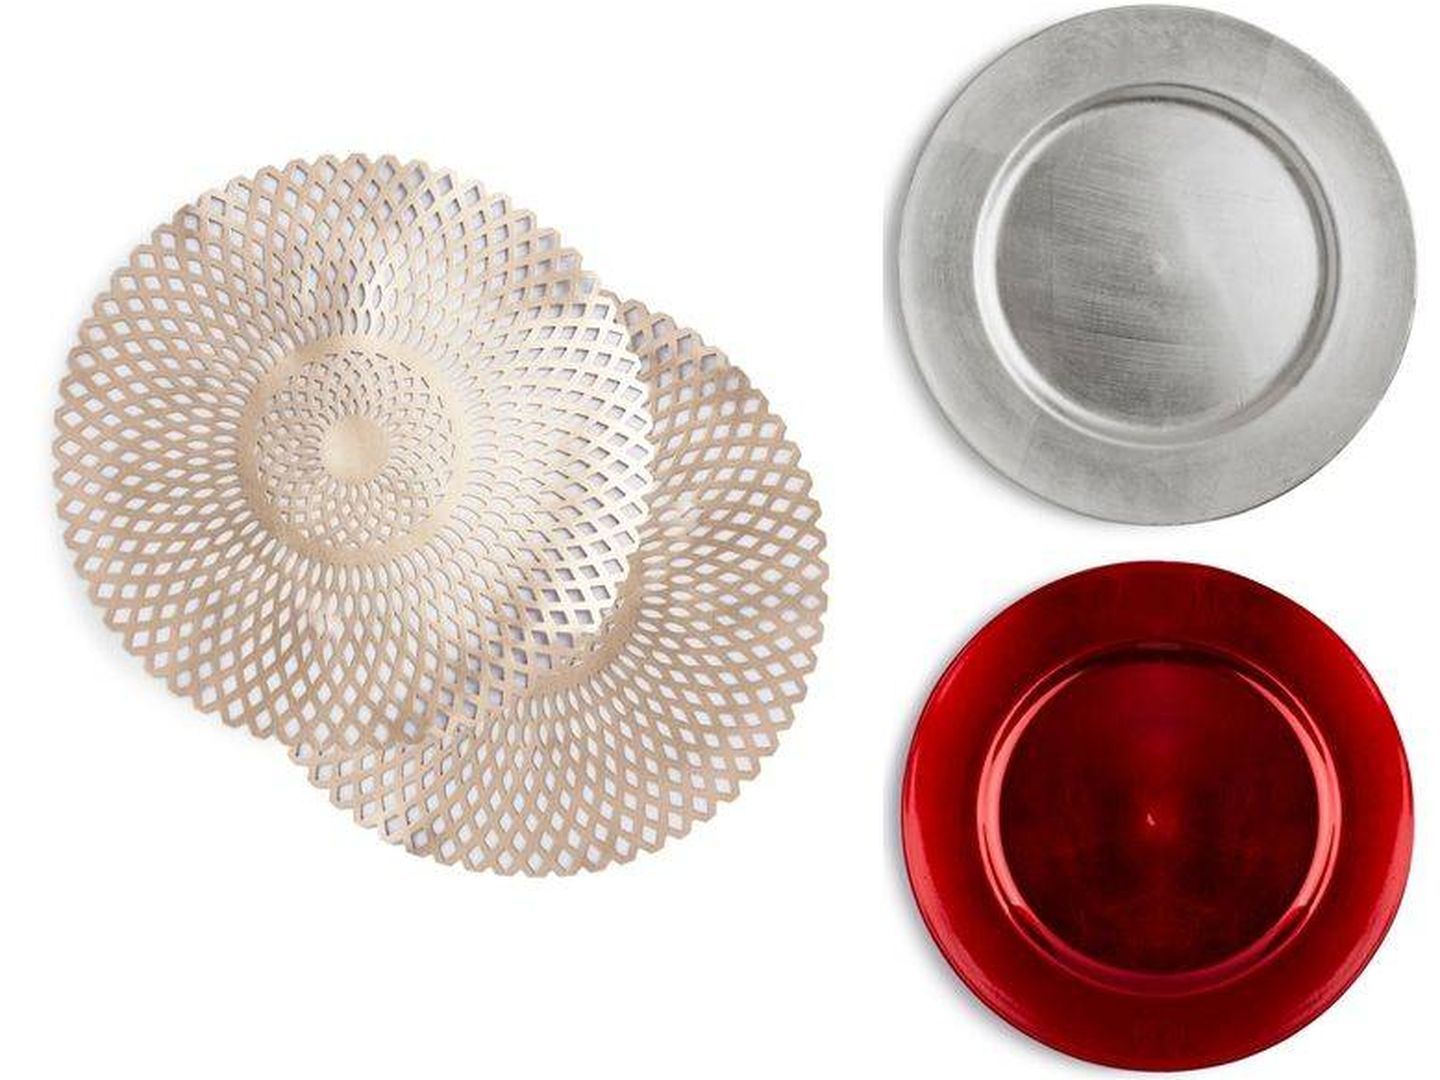 Manteles individuales y platos de plástico metálicos. (Cortesía)